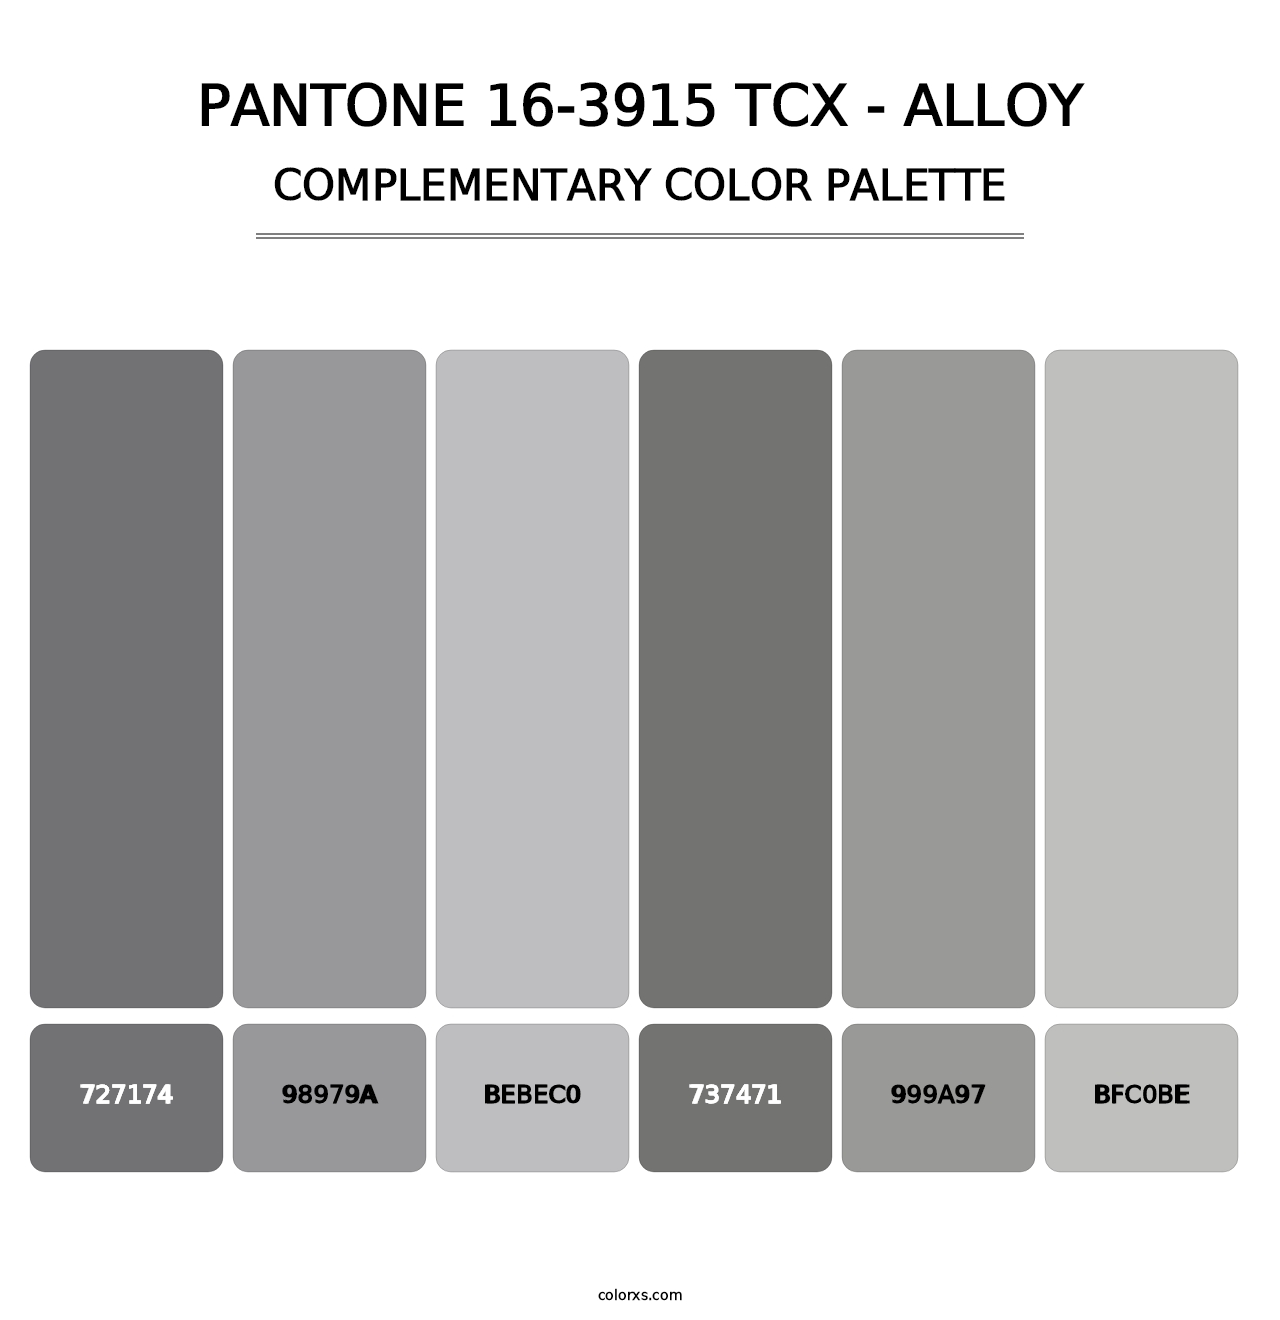 PANTONE 16-3915 TCX - Alloy - Complementary Color Palette